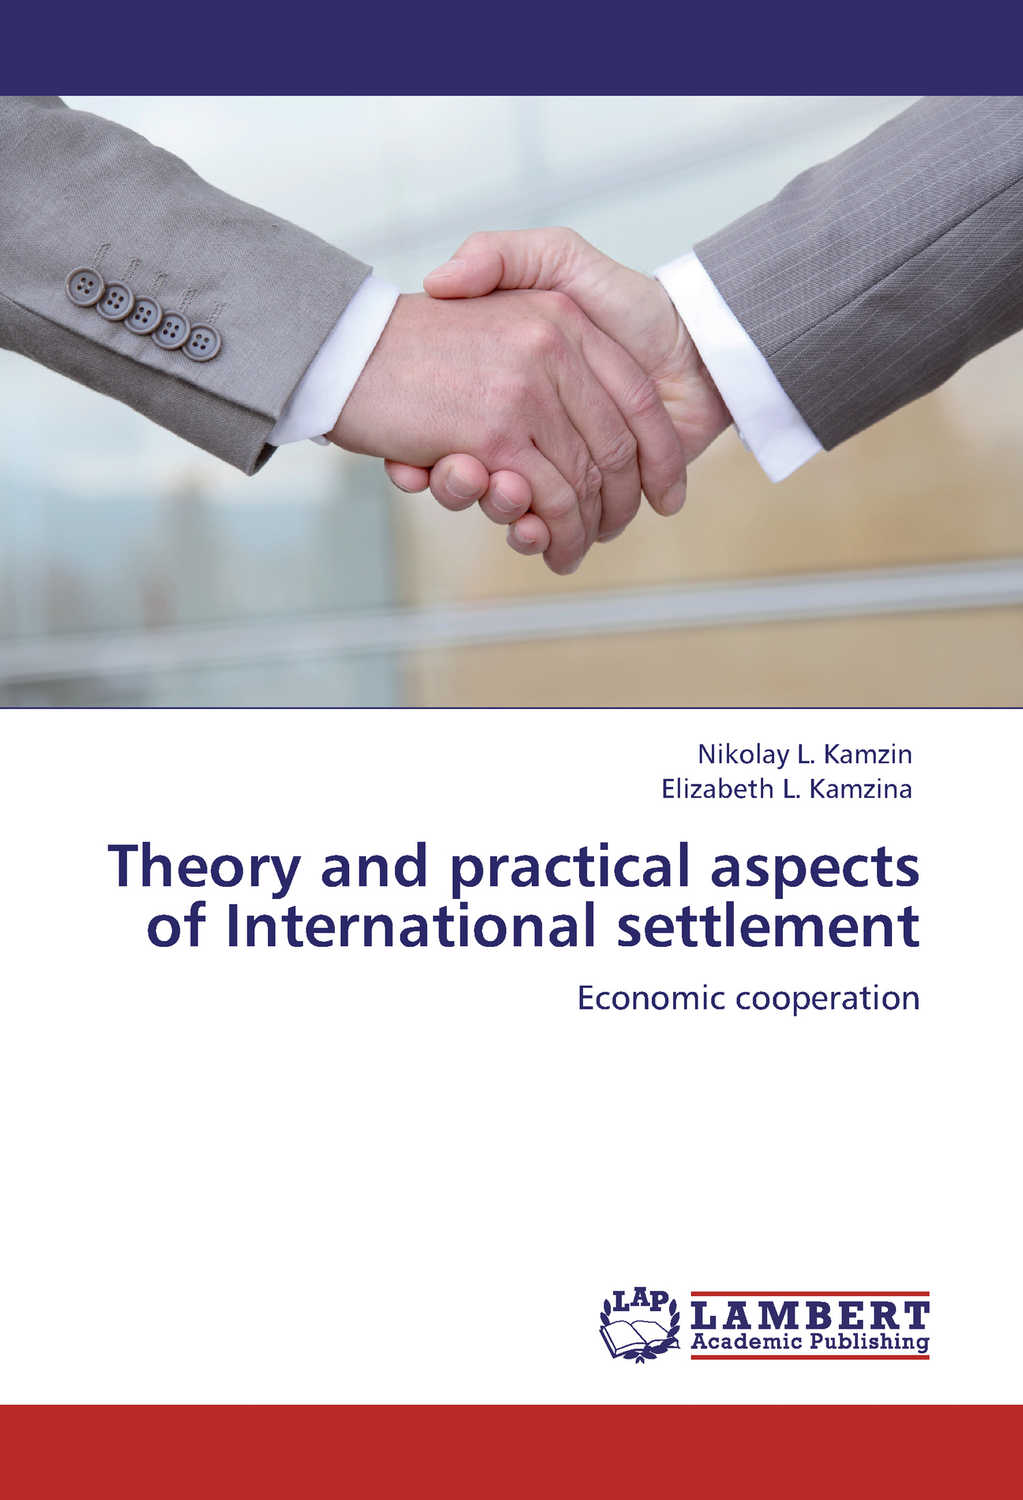 Камзин Николай, Камзина Елизавета - «Theory and practical aspects of Internationa settlements. Economic cooperation»